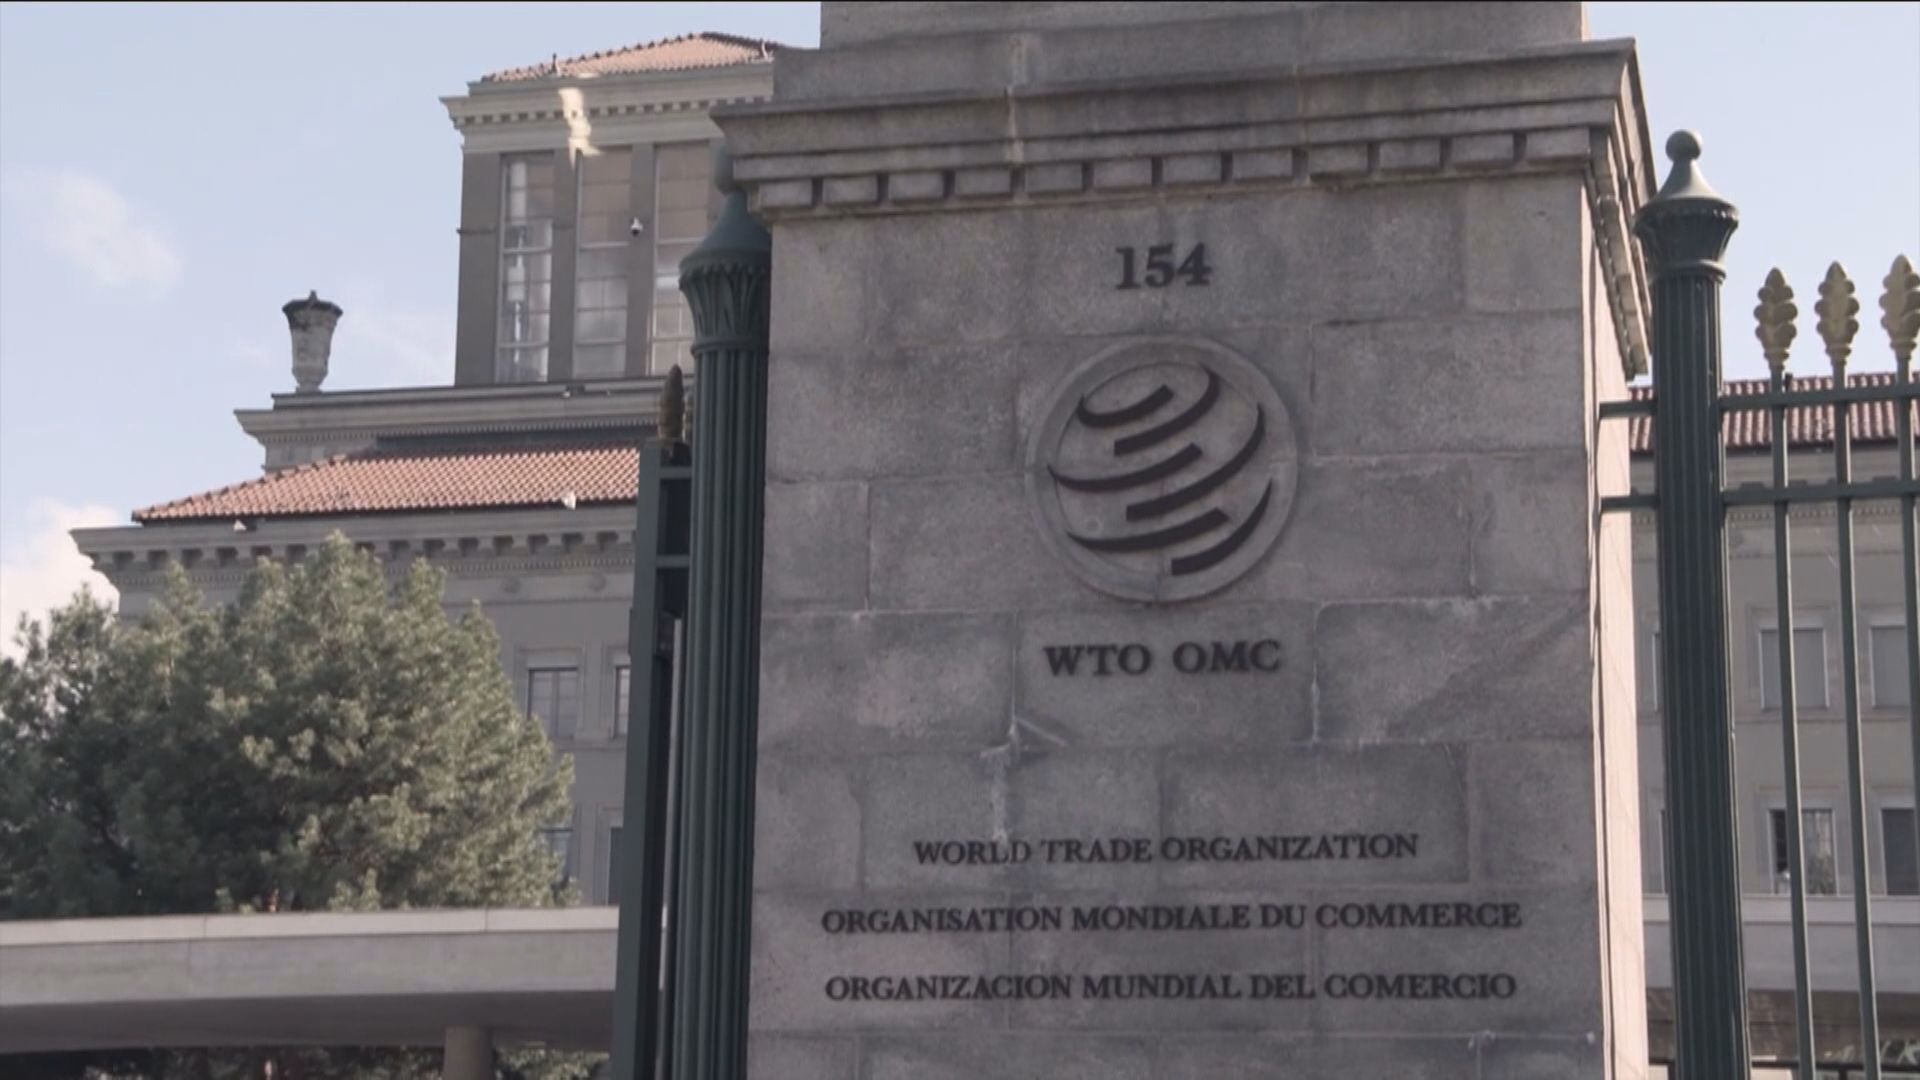 【展望報告】WTO:全球貿易逐步回升 地緣政局成最大風險